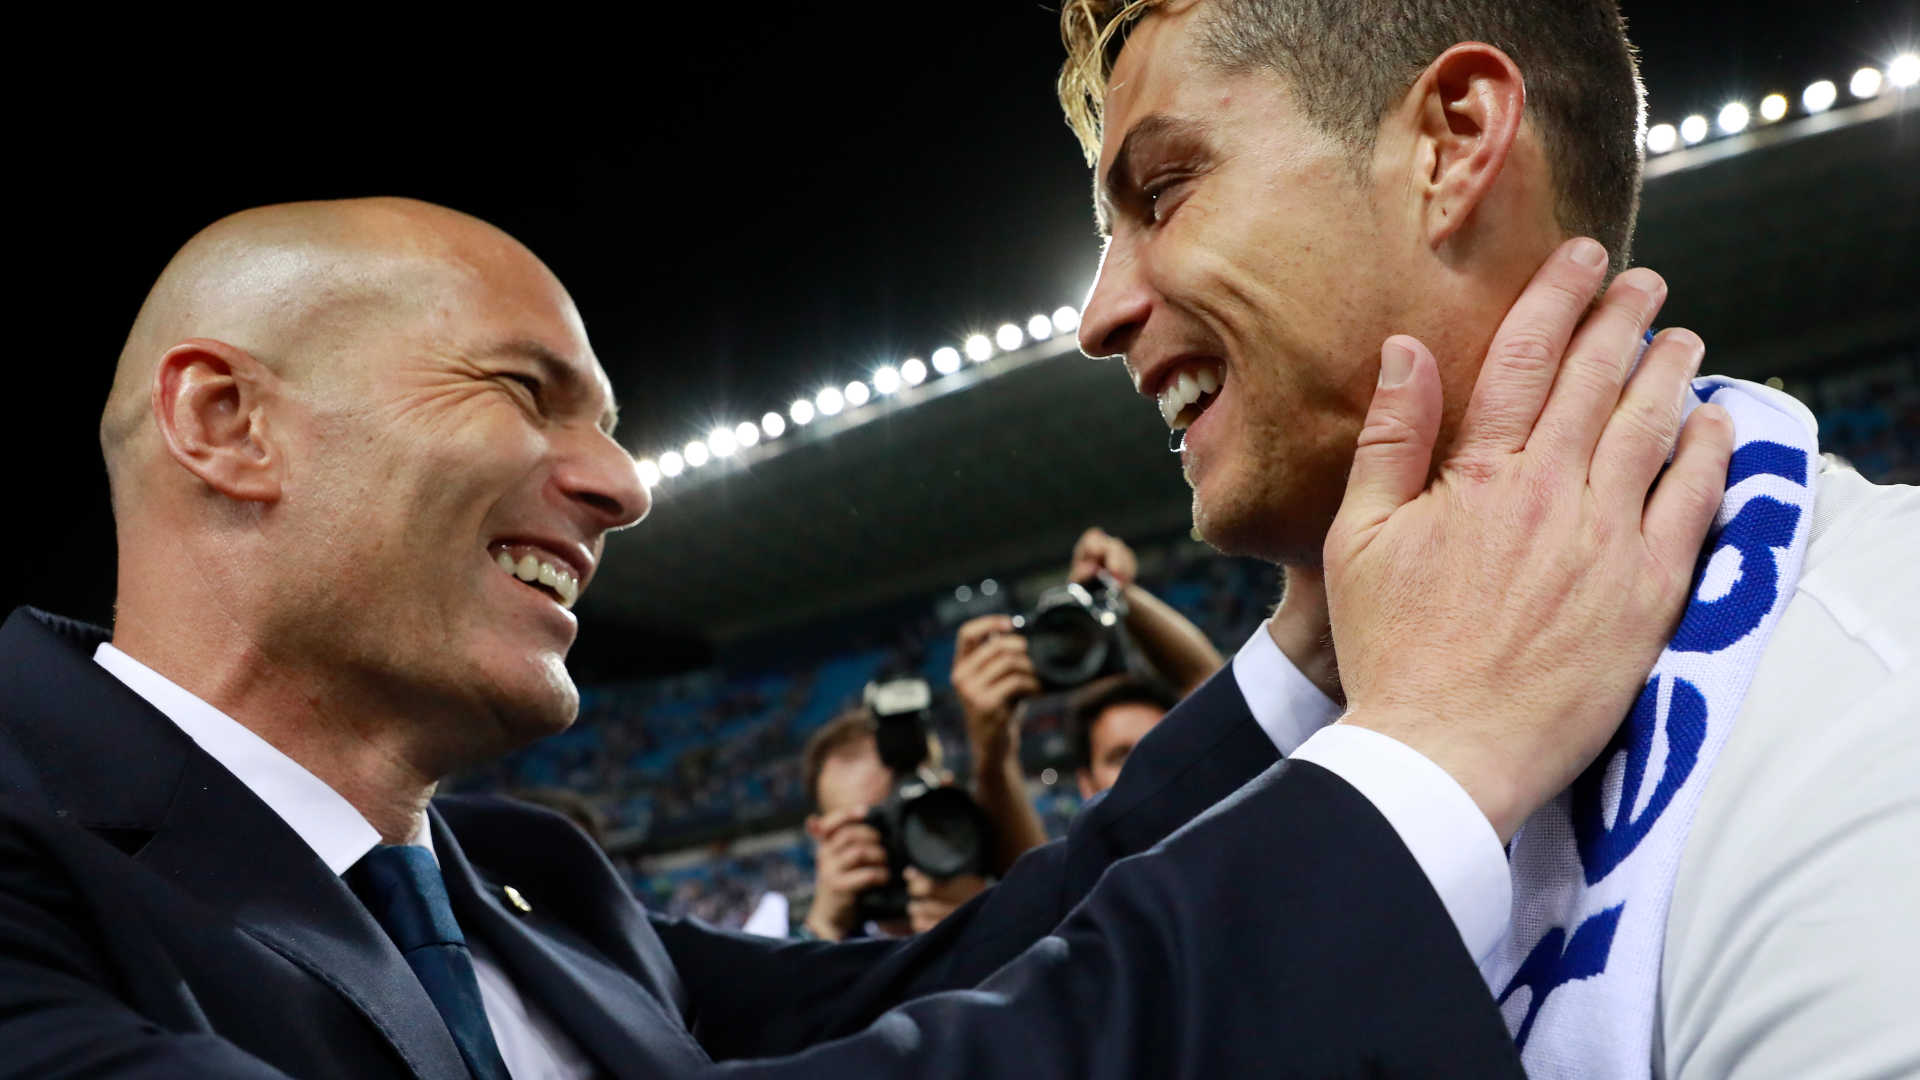 Nos últimos dias, foi falado sobre a possível presença de Zidane na apresentação de Cristiano Ronaldo na Juventus